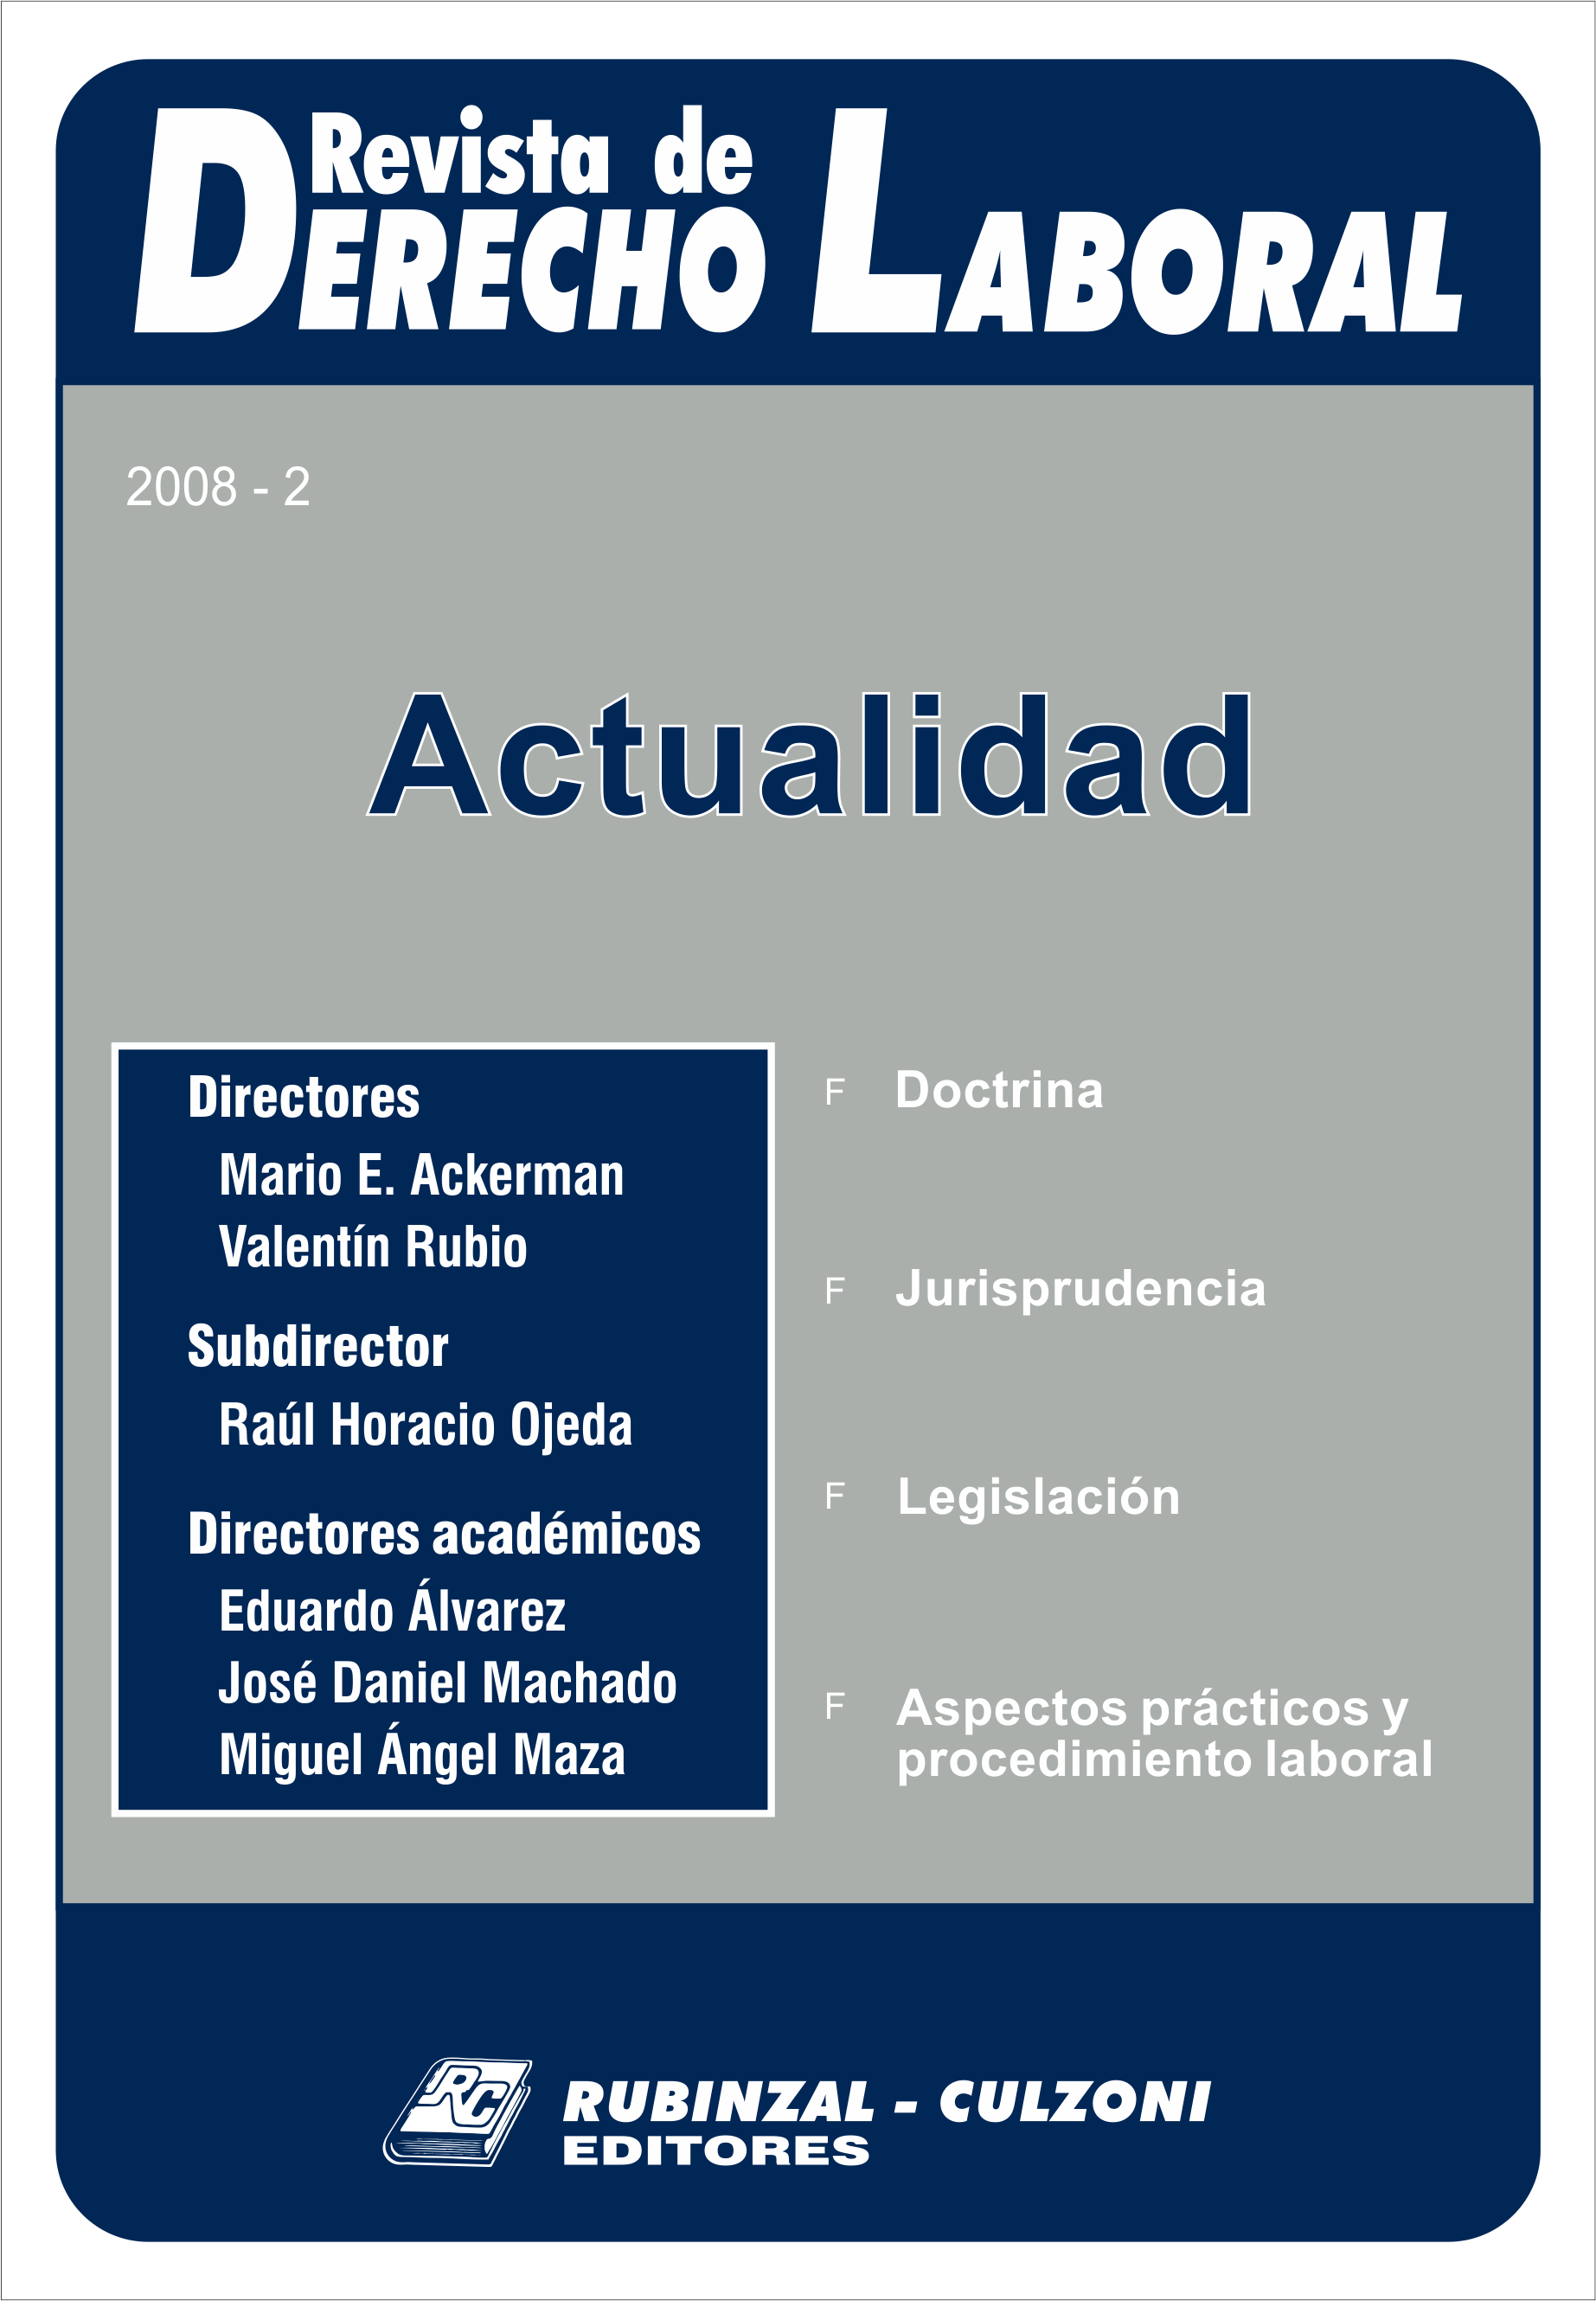 Revista de Derecho Laboral Actualidad - Año 2008 - 2.